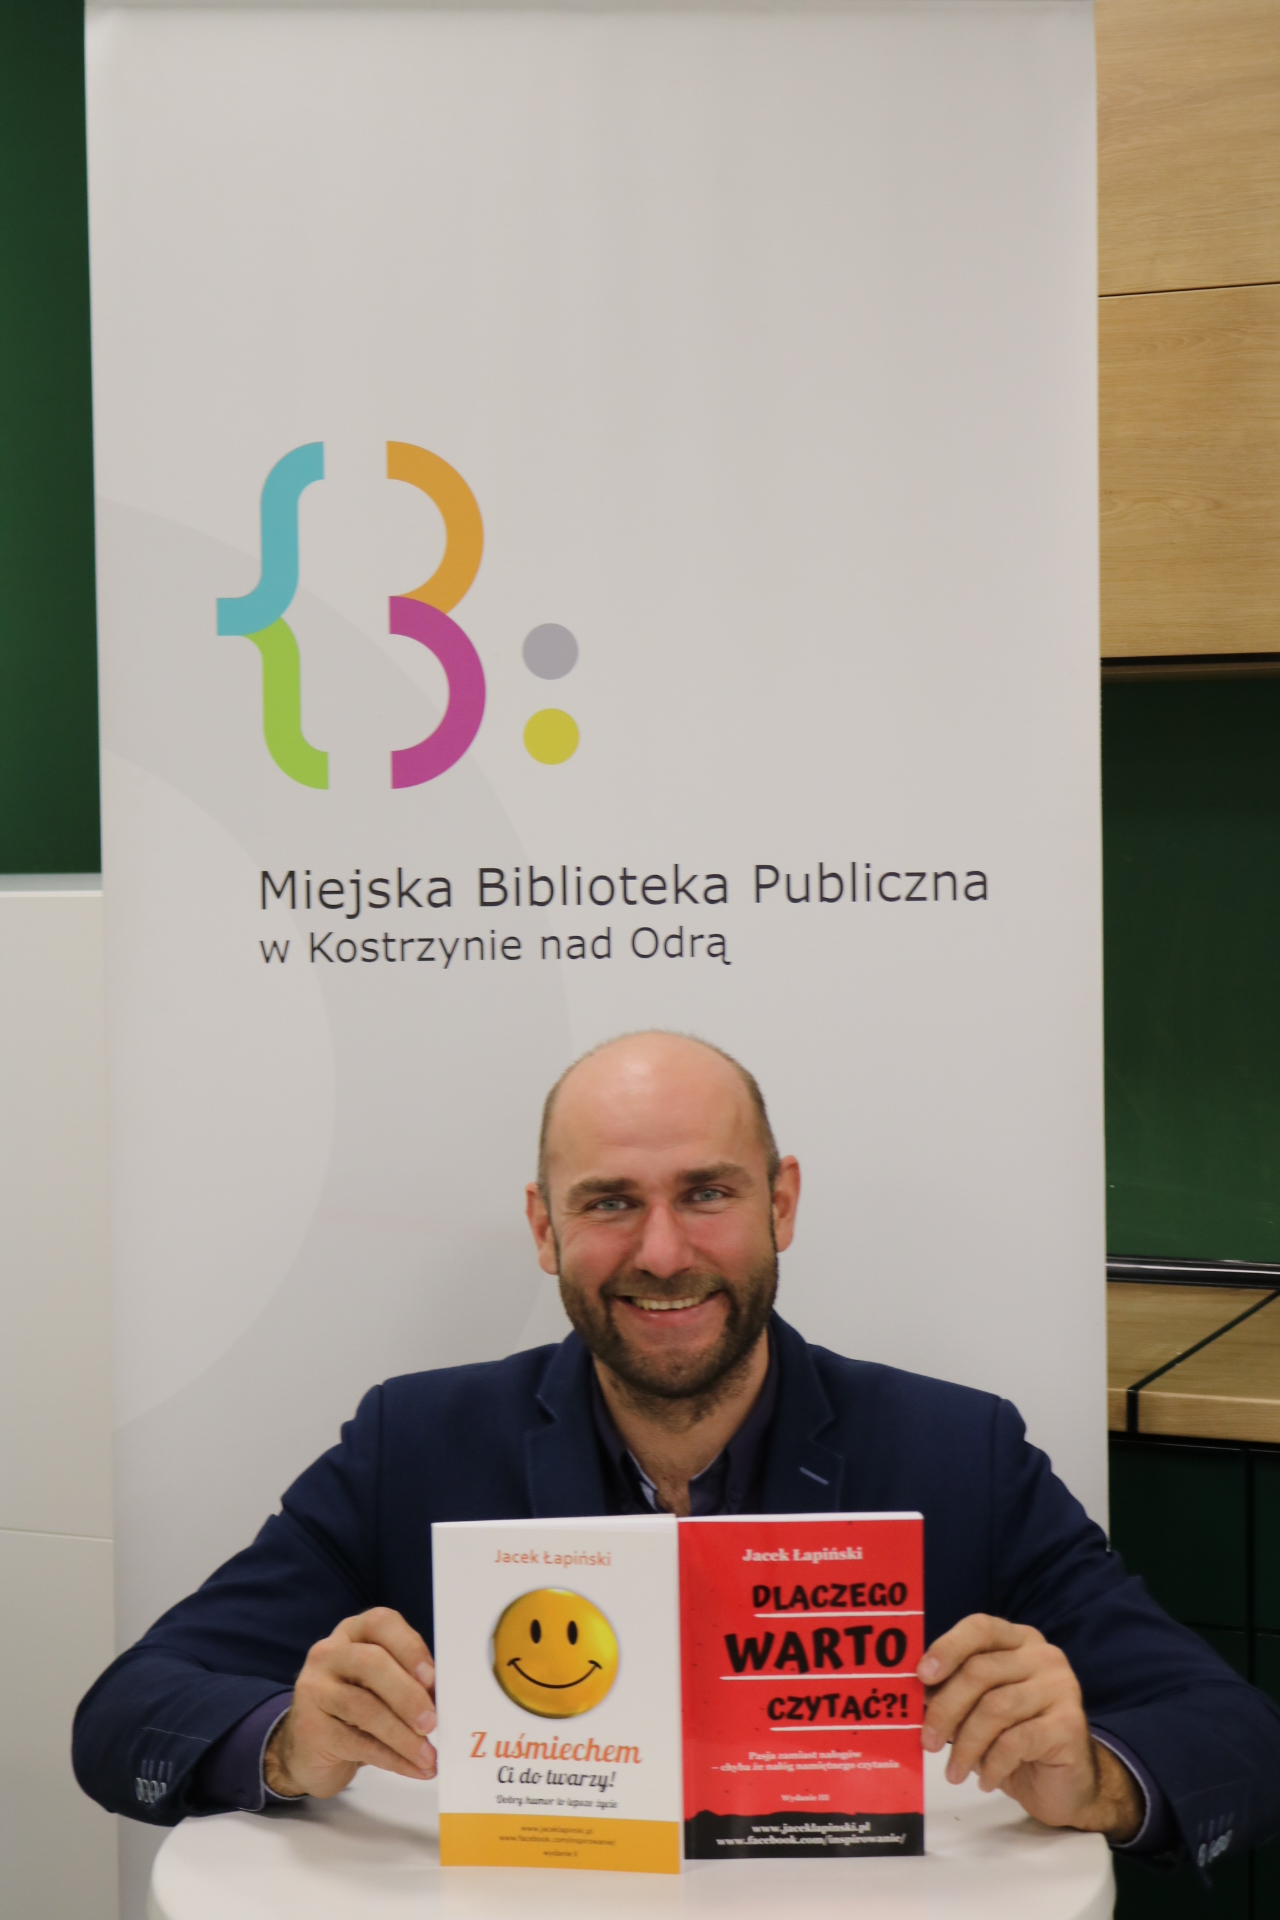 Autor Jacek Łapiński prezentuje swoją książkę: Dlaczego warto czytać